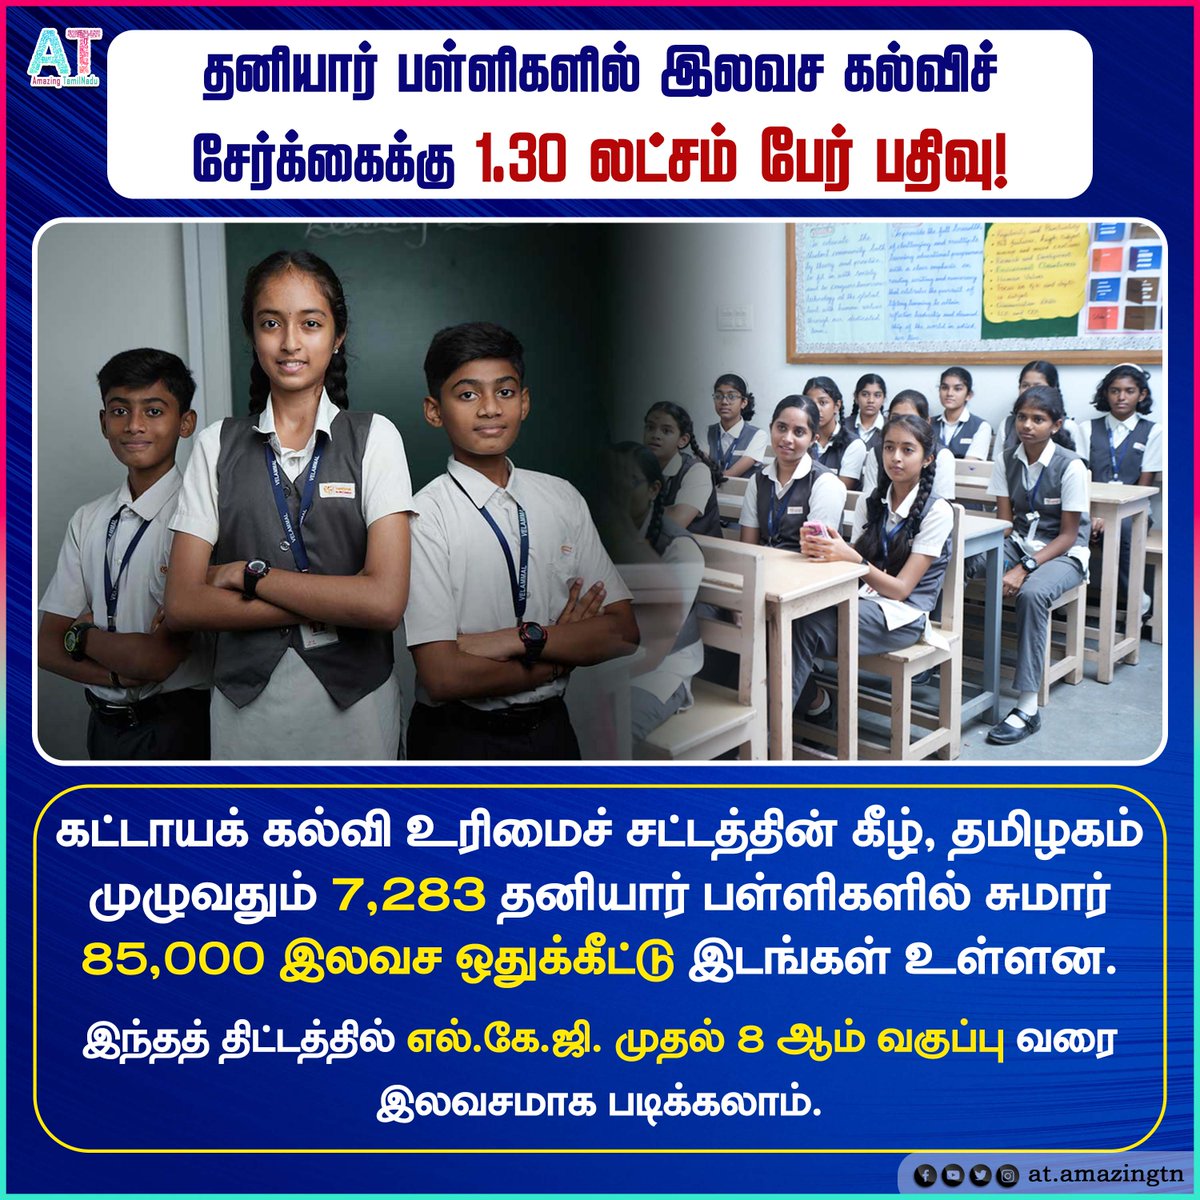 தனியார் பள்ளிகளில் இலவச கல்விச் சேர்க்கைக்கு 1.30 லட்சம் பேர் பதிவு! 

#tamilnadu #tngovt #tamilnaduschools #tnschool #privateschools #education #school